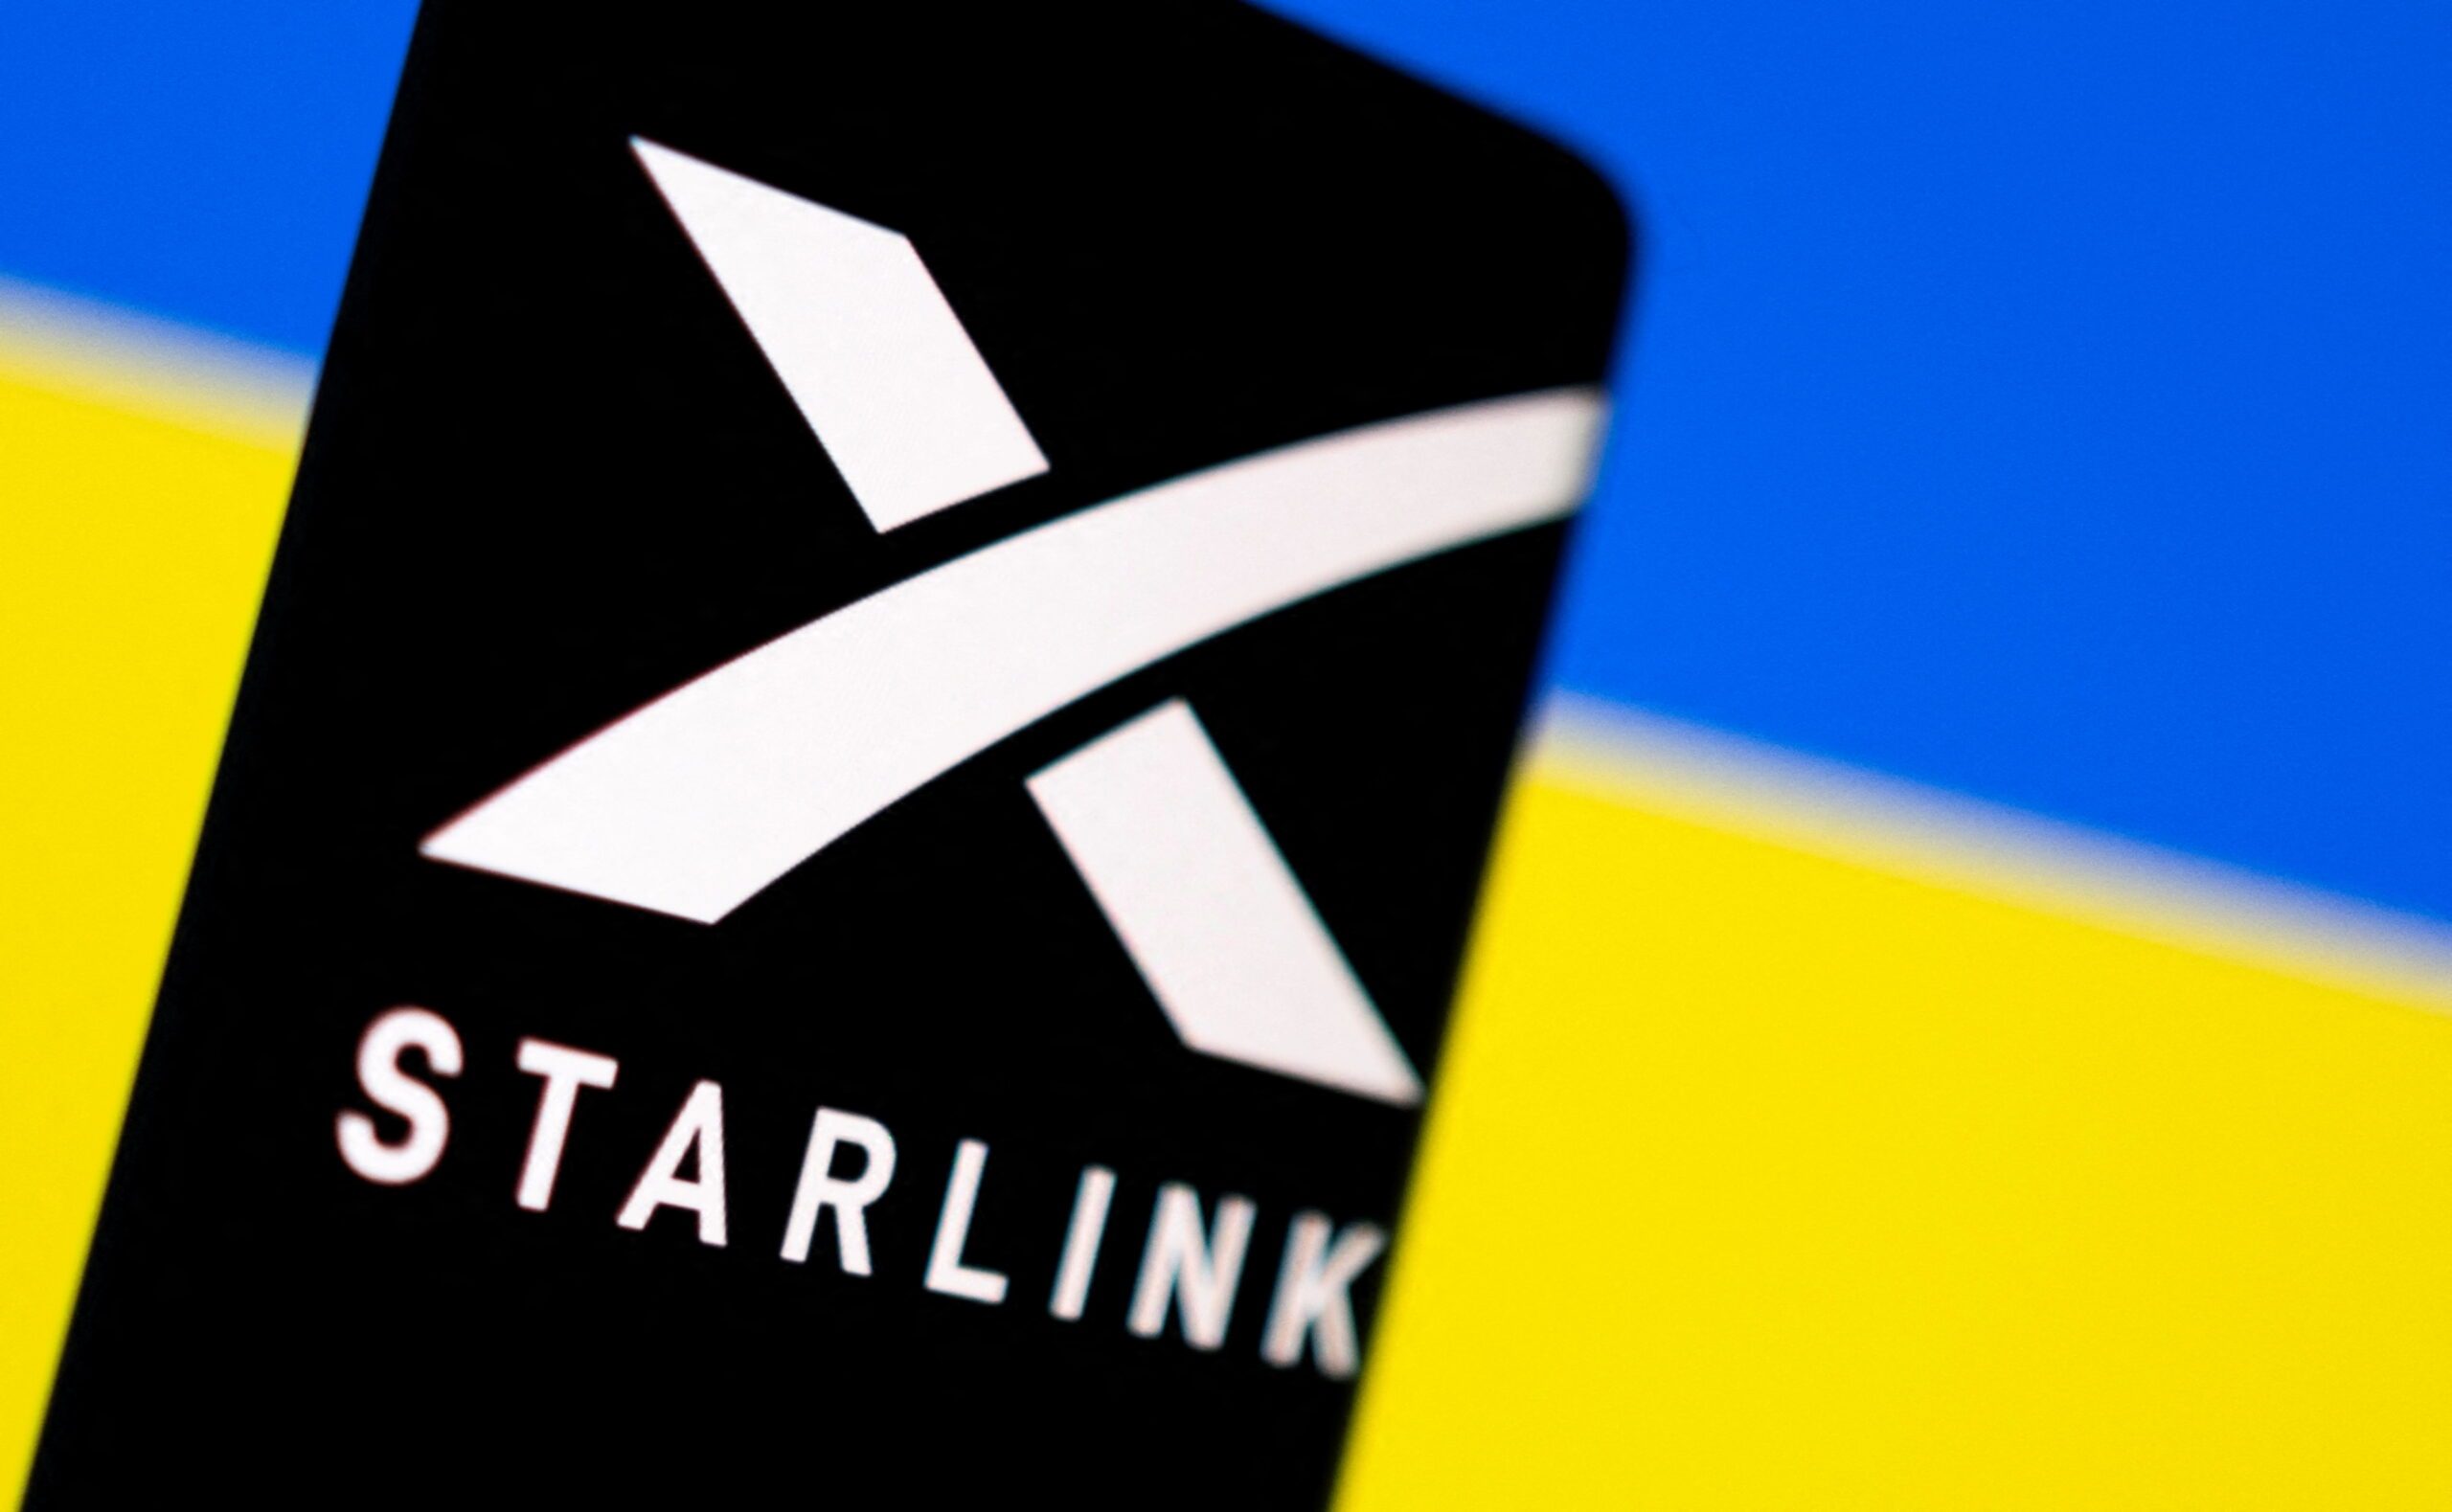 Ukraine gets Starlink internet terminals, friendly warning about safety